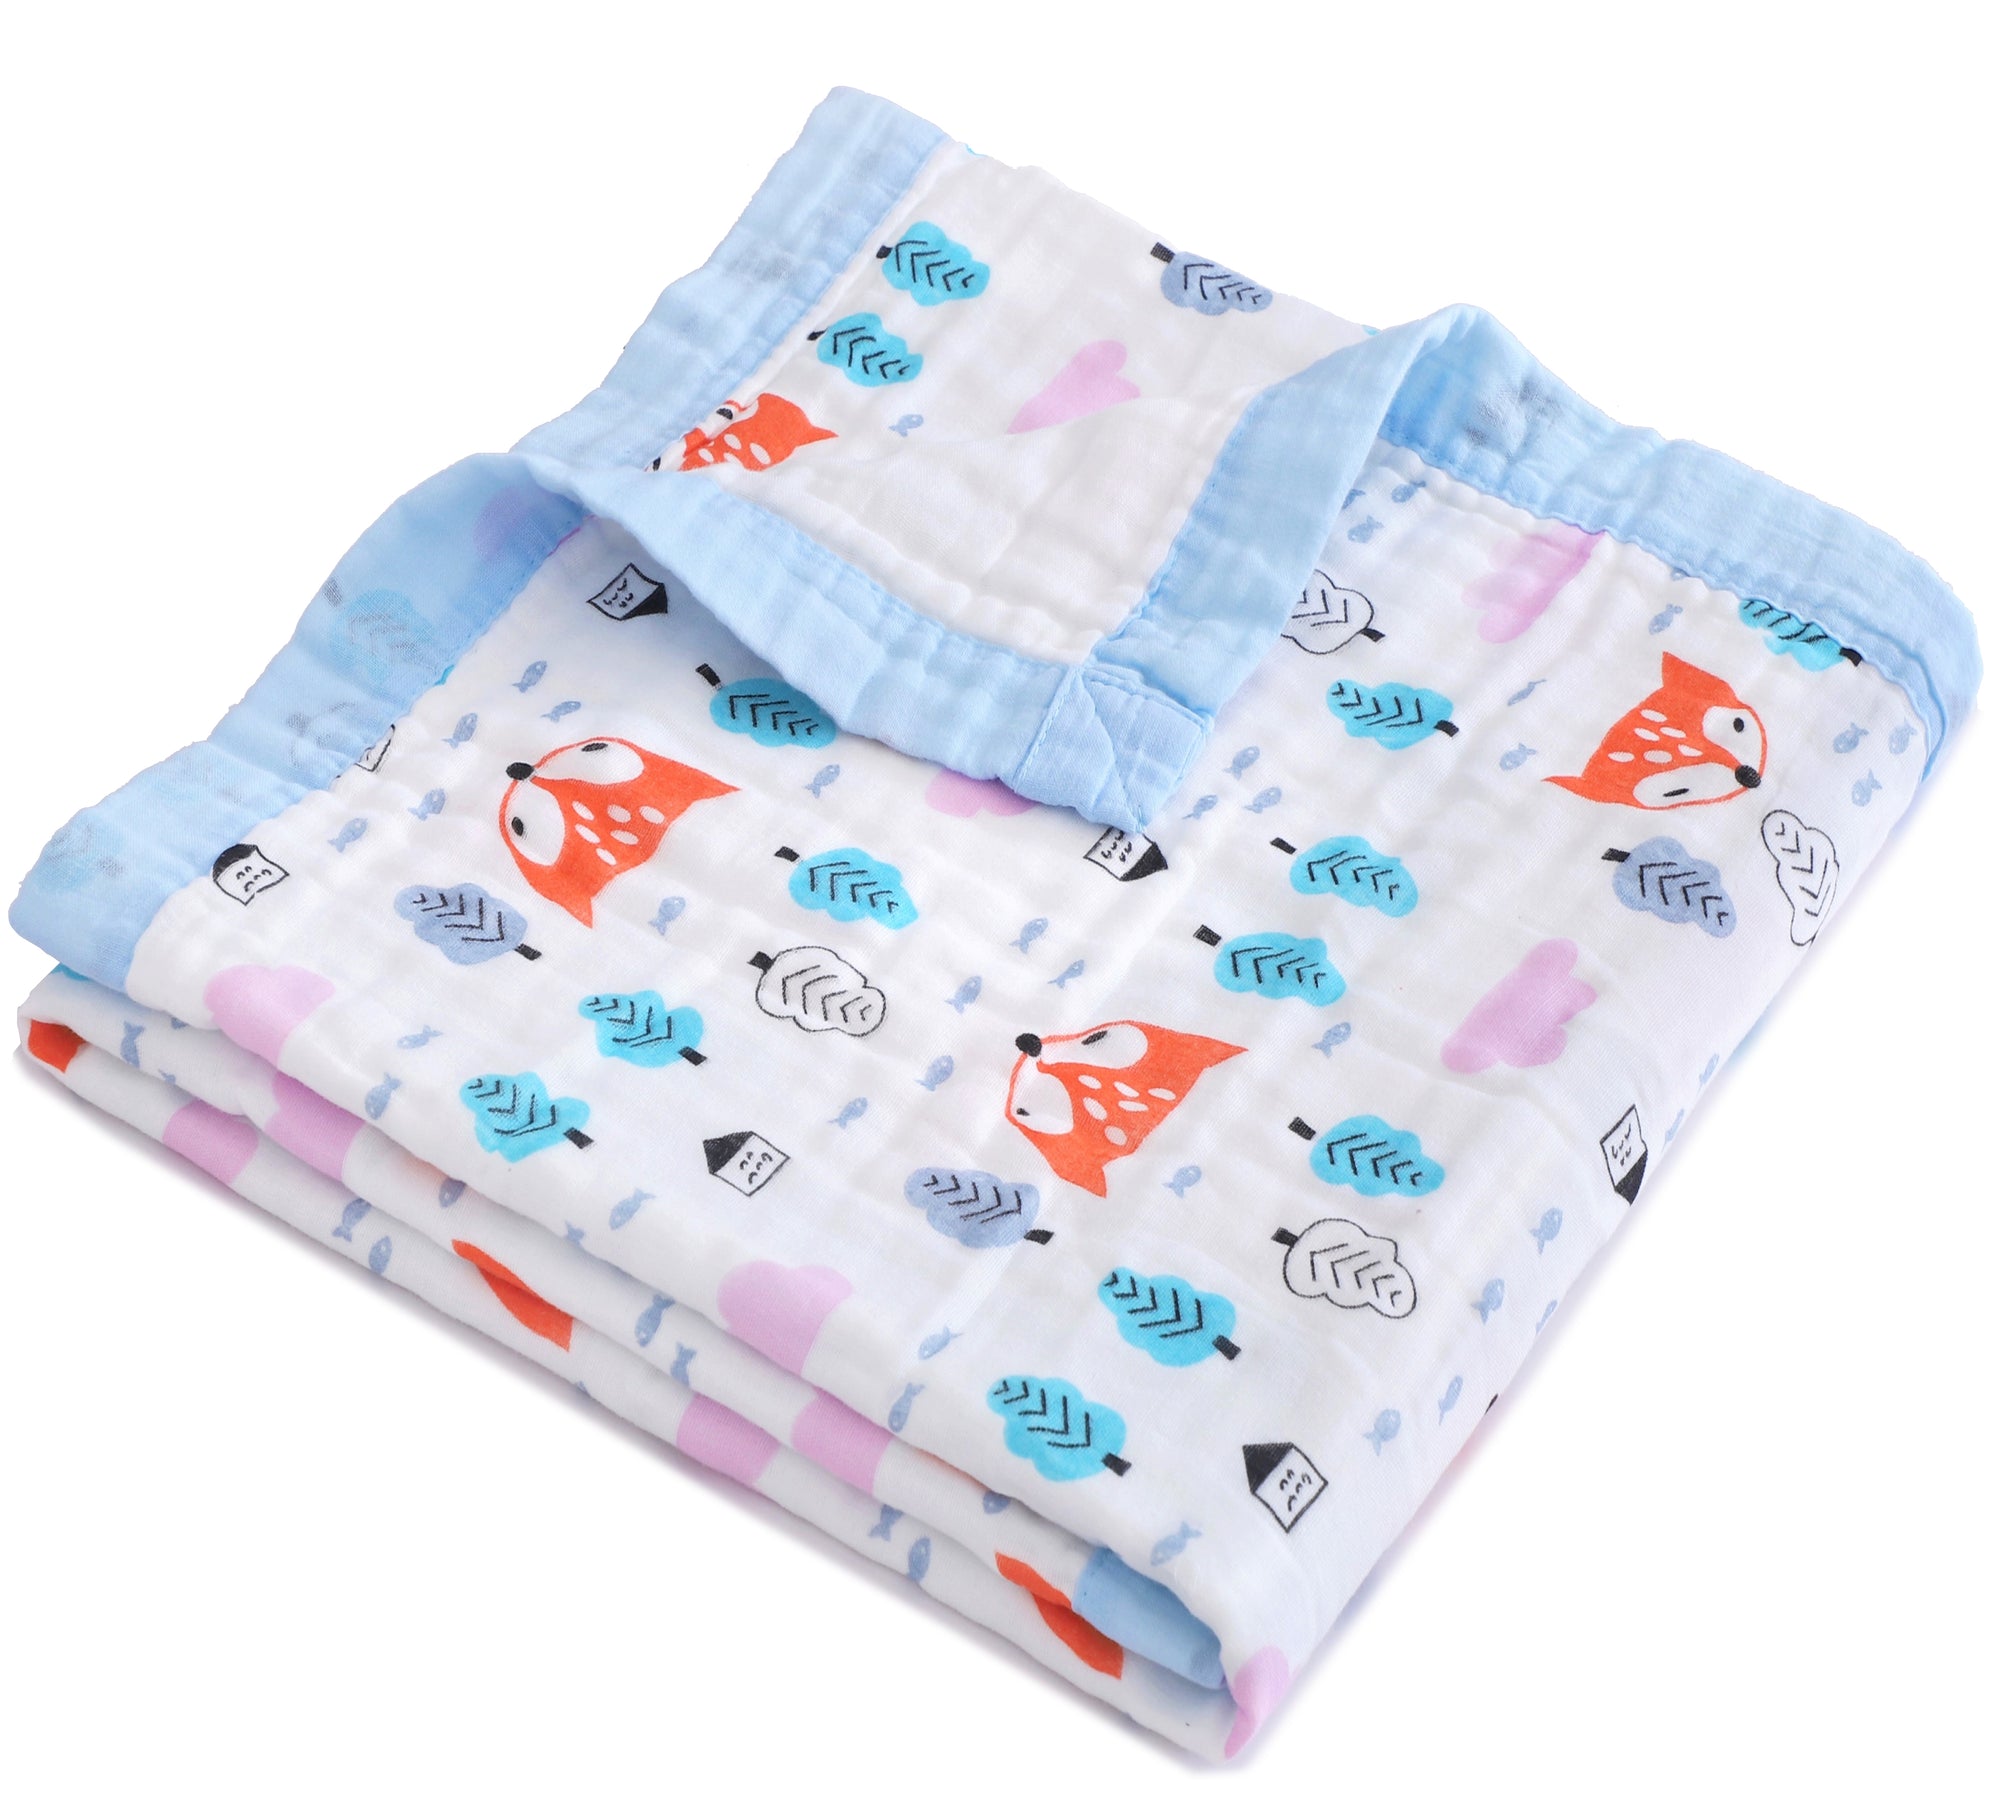 Baby/Toddler Muslin Cotton Blanket - Orange Fox